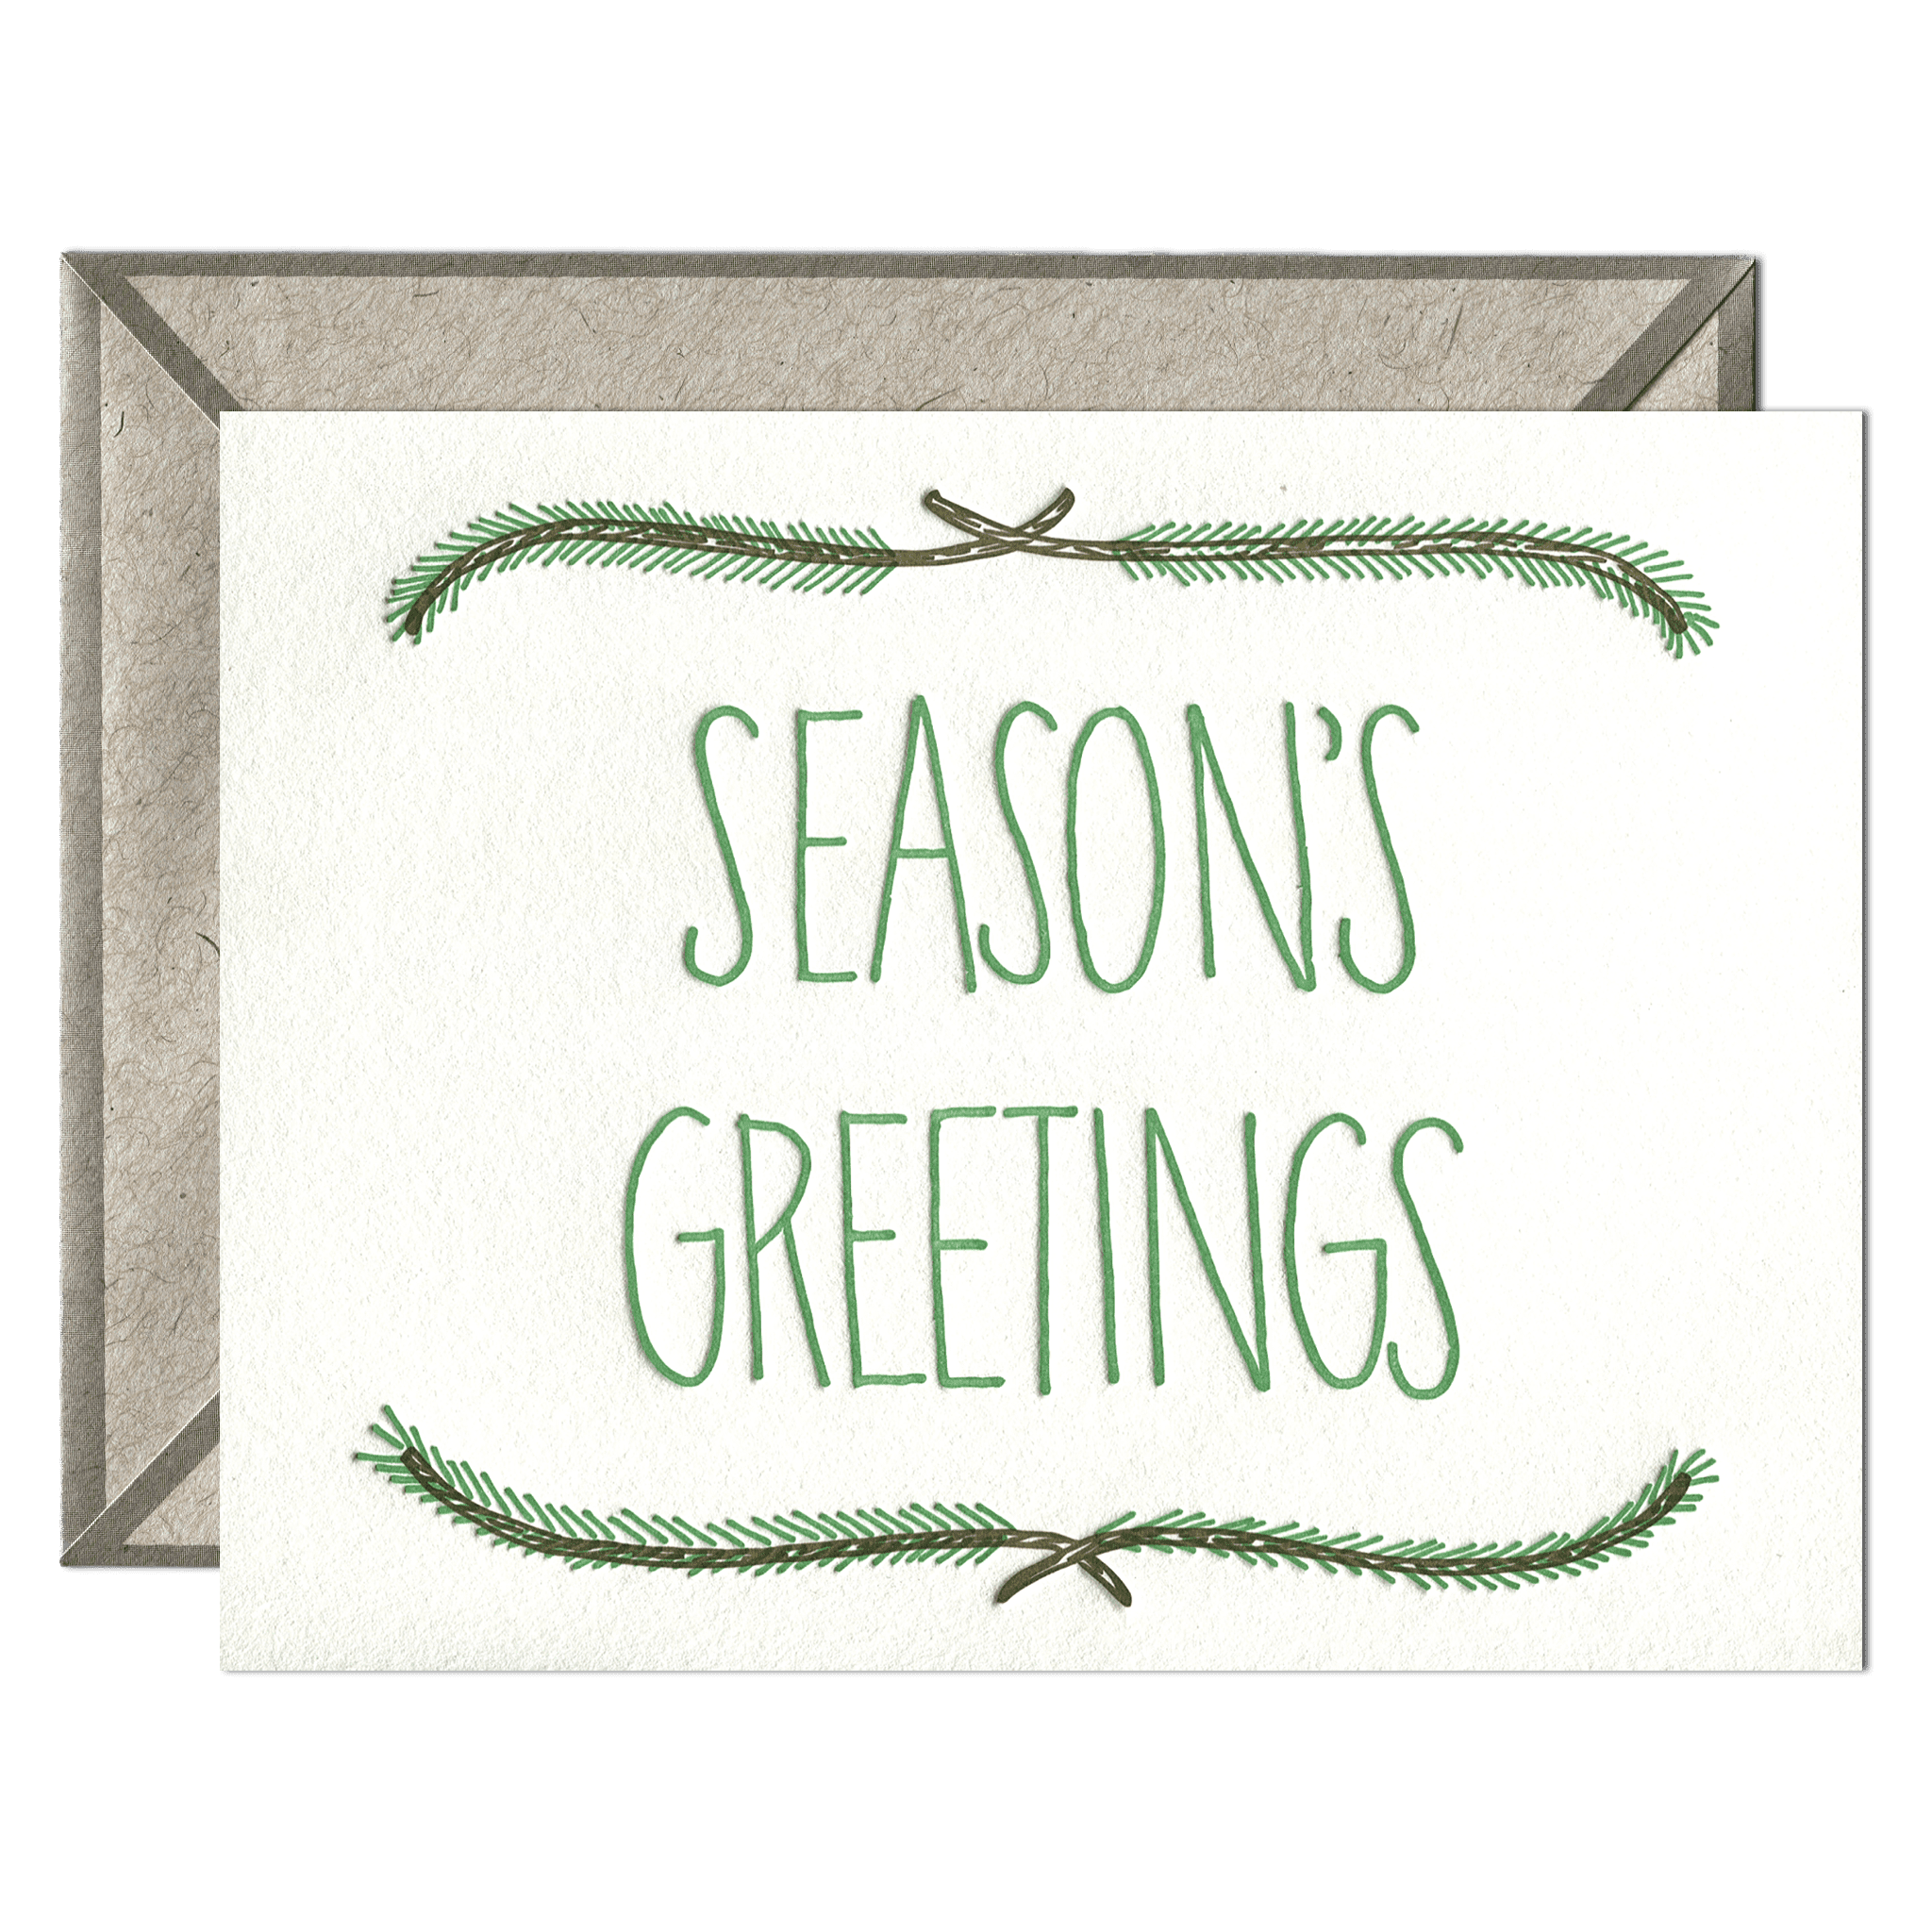 Season's Greetings - Winter Holidays